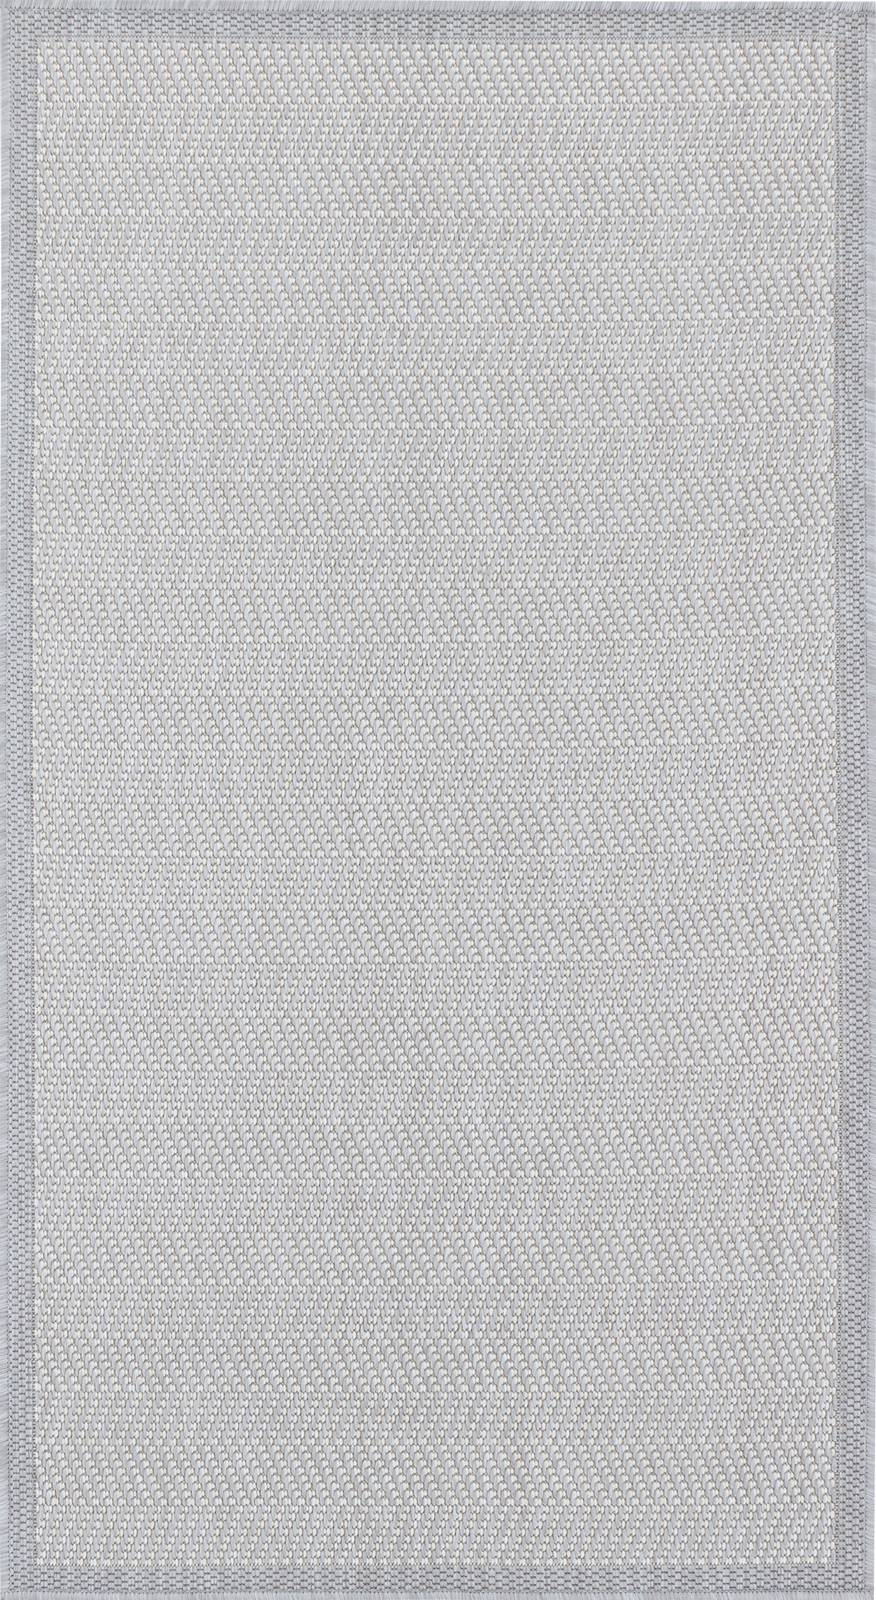 Tapis d'Extérieur et Intérieur - Gris et Ivoire - 80x150cm